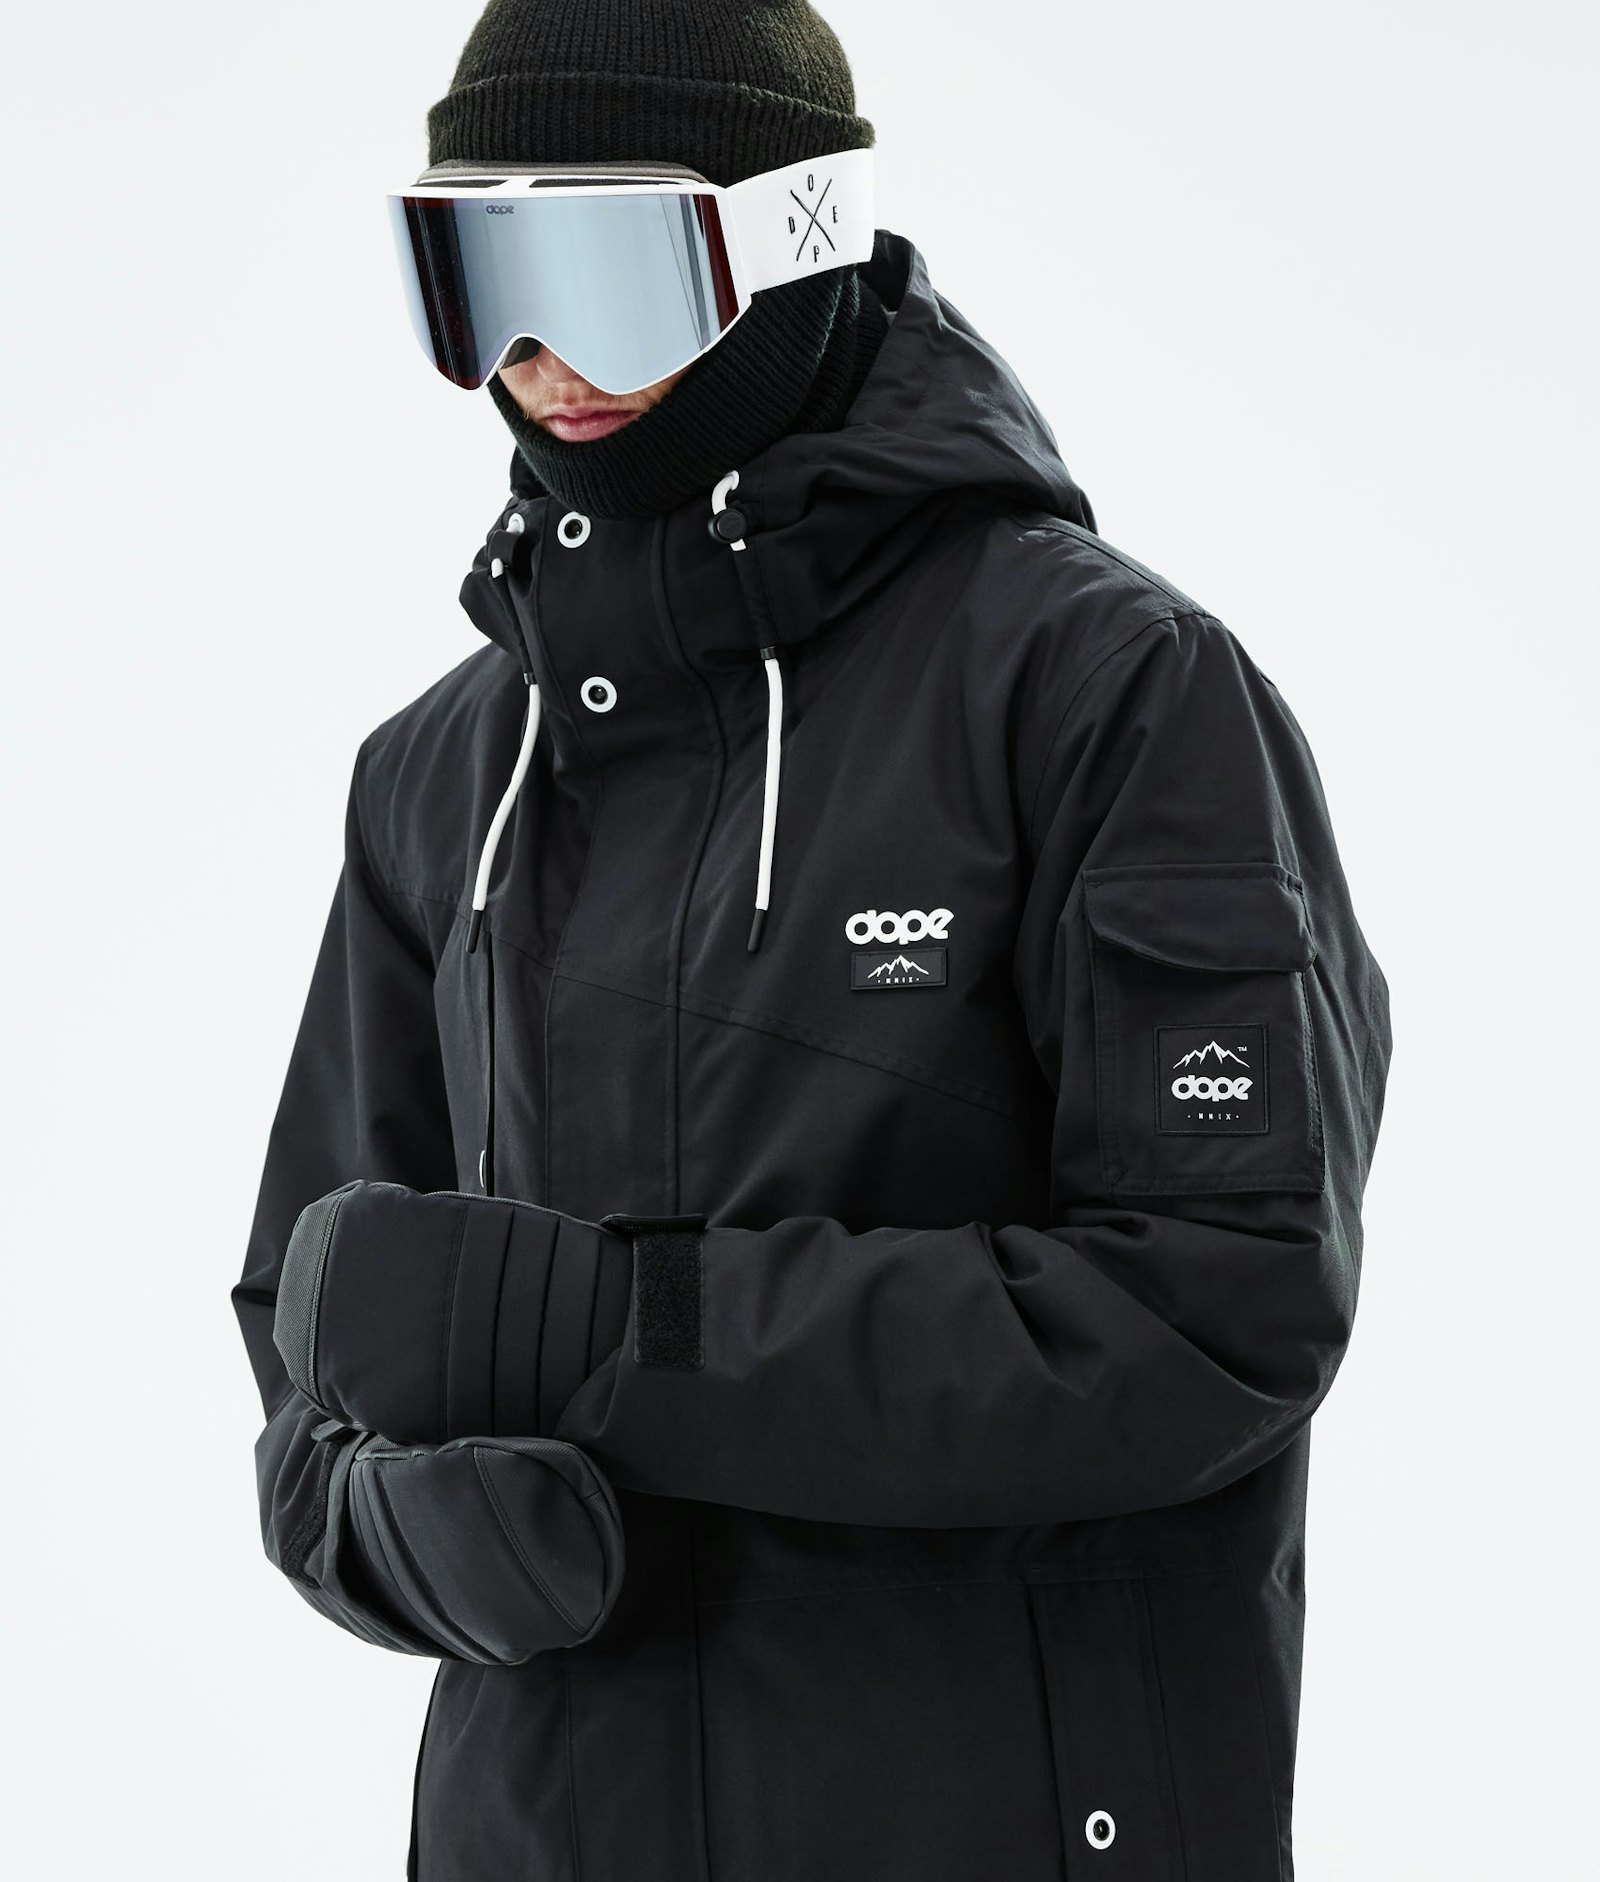 Dope Adept 2019 Ski Jacket Men Black, Image 2 of 9